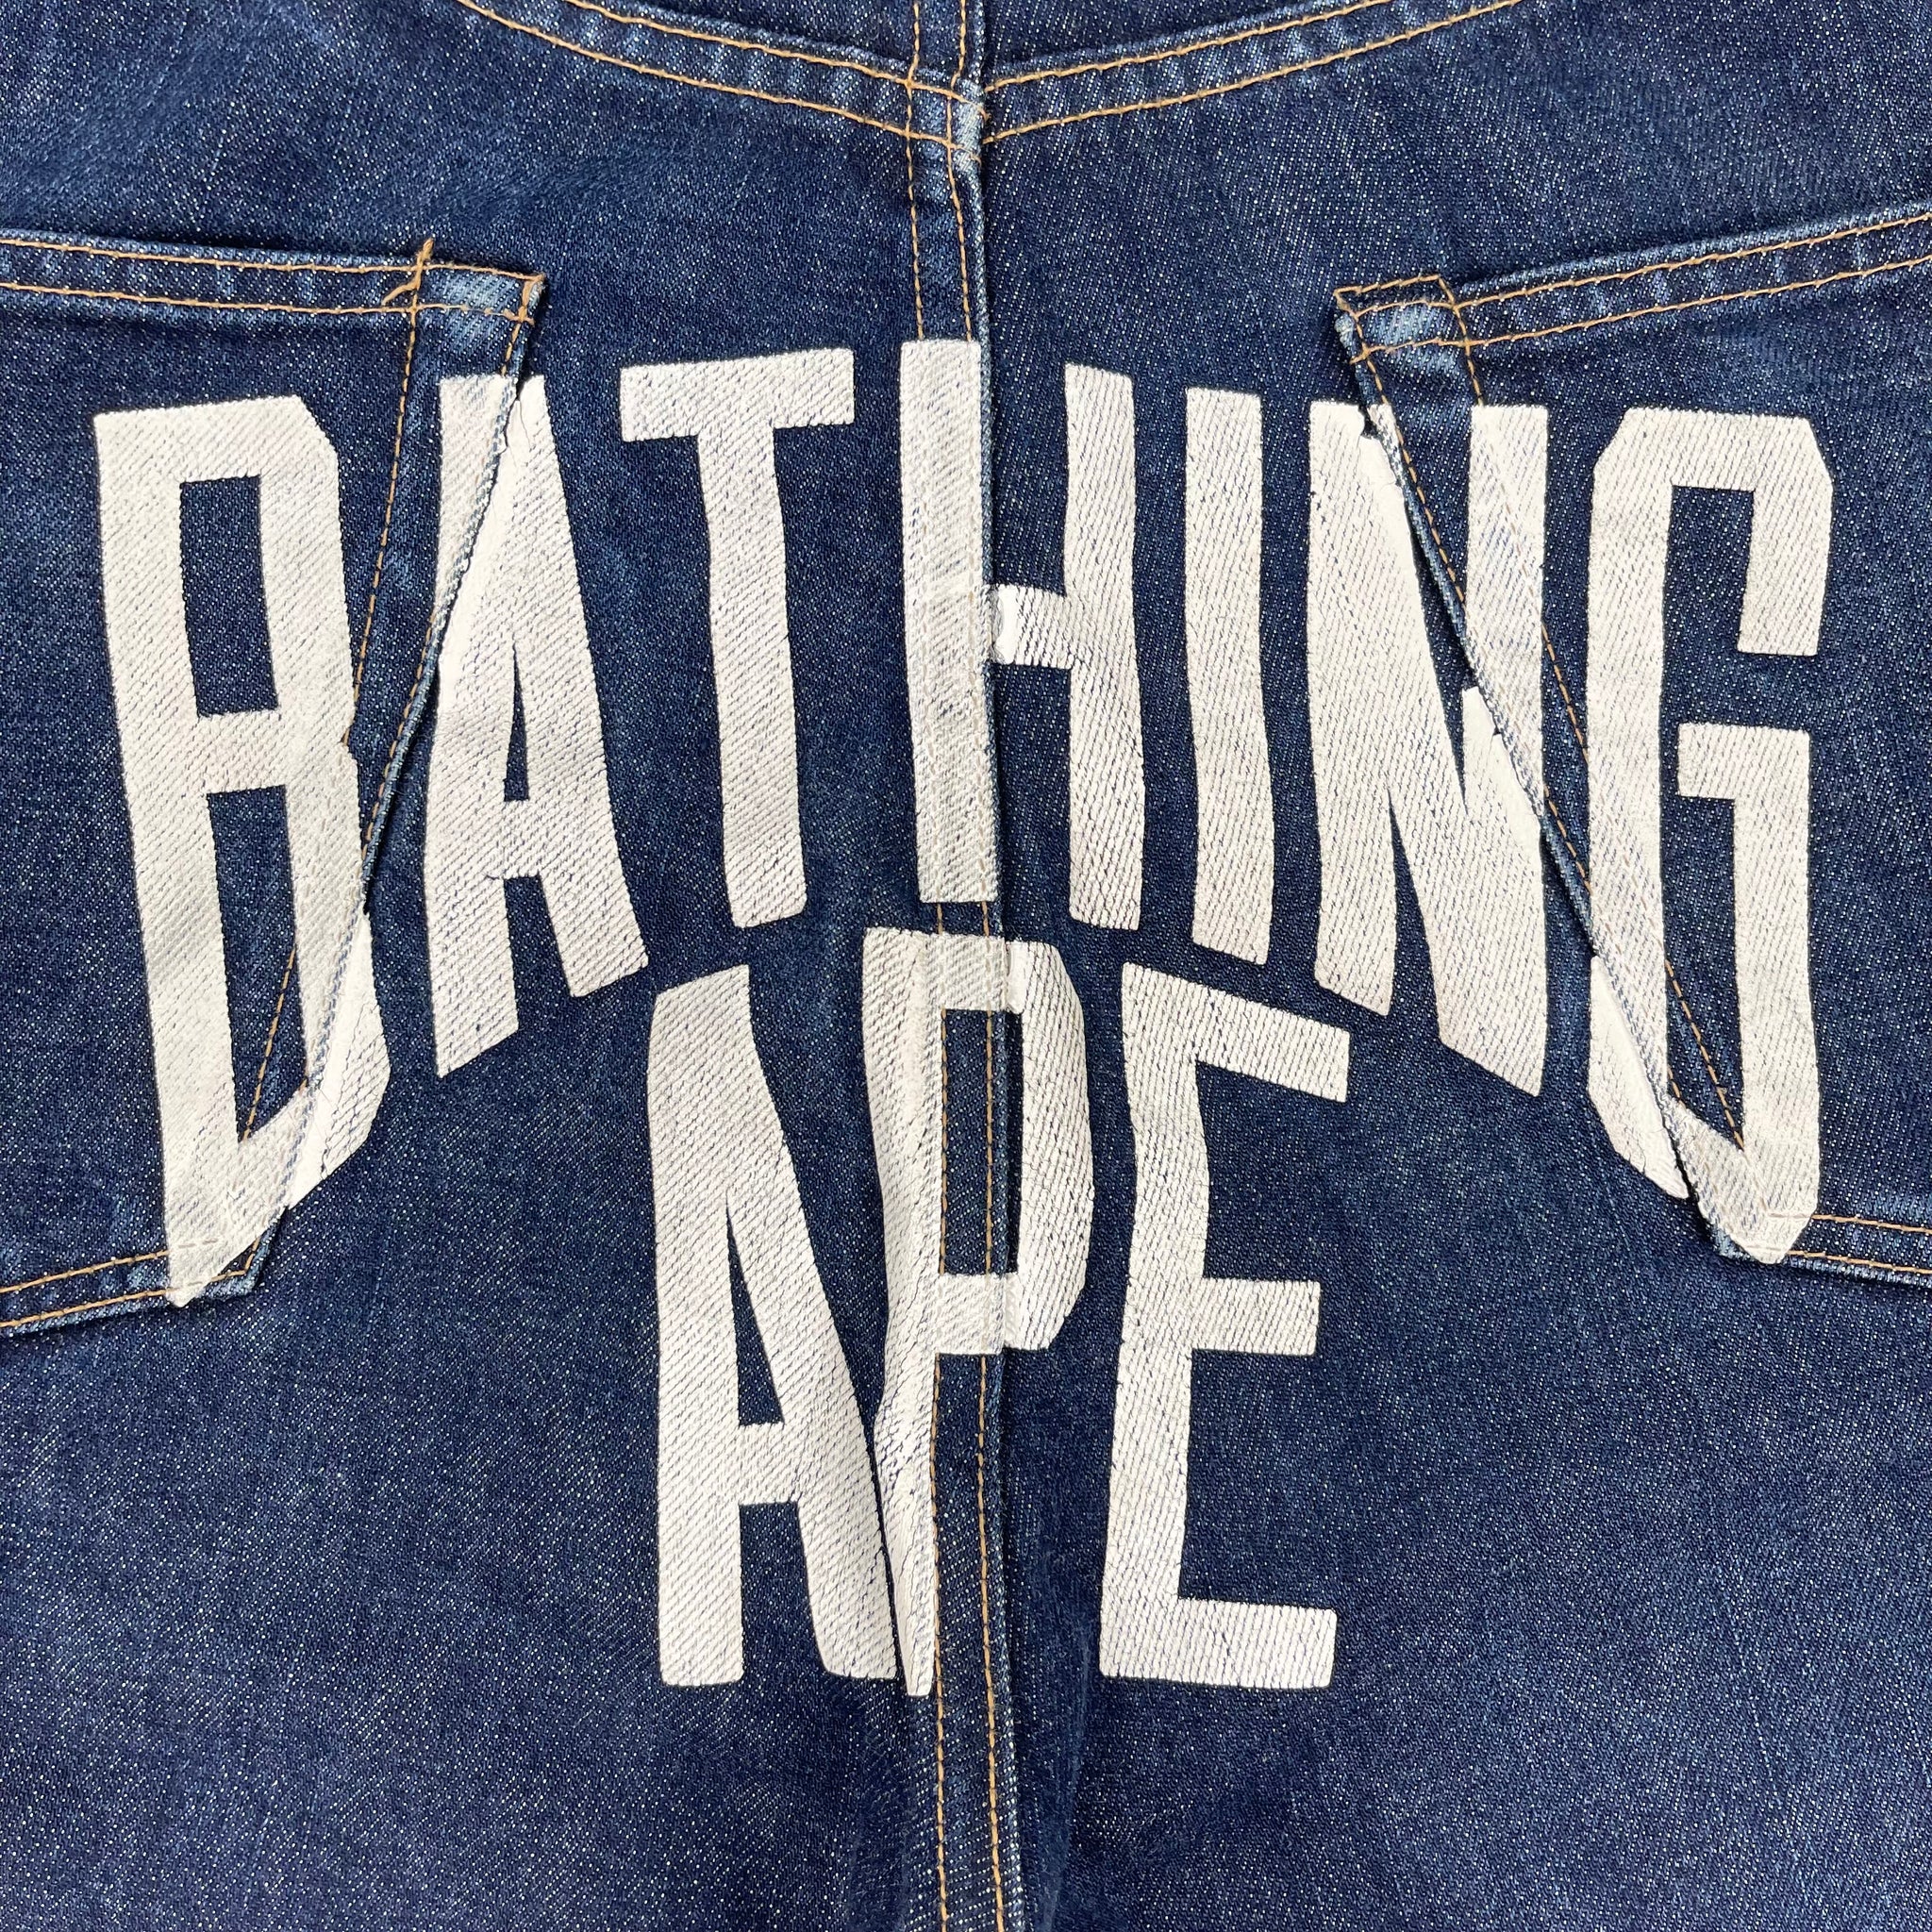 Bape 'Bathing Ape' Denim Shorts (W34)